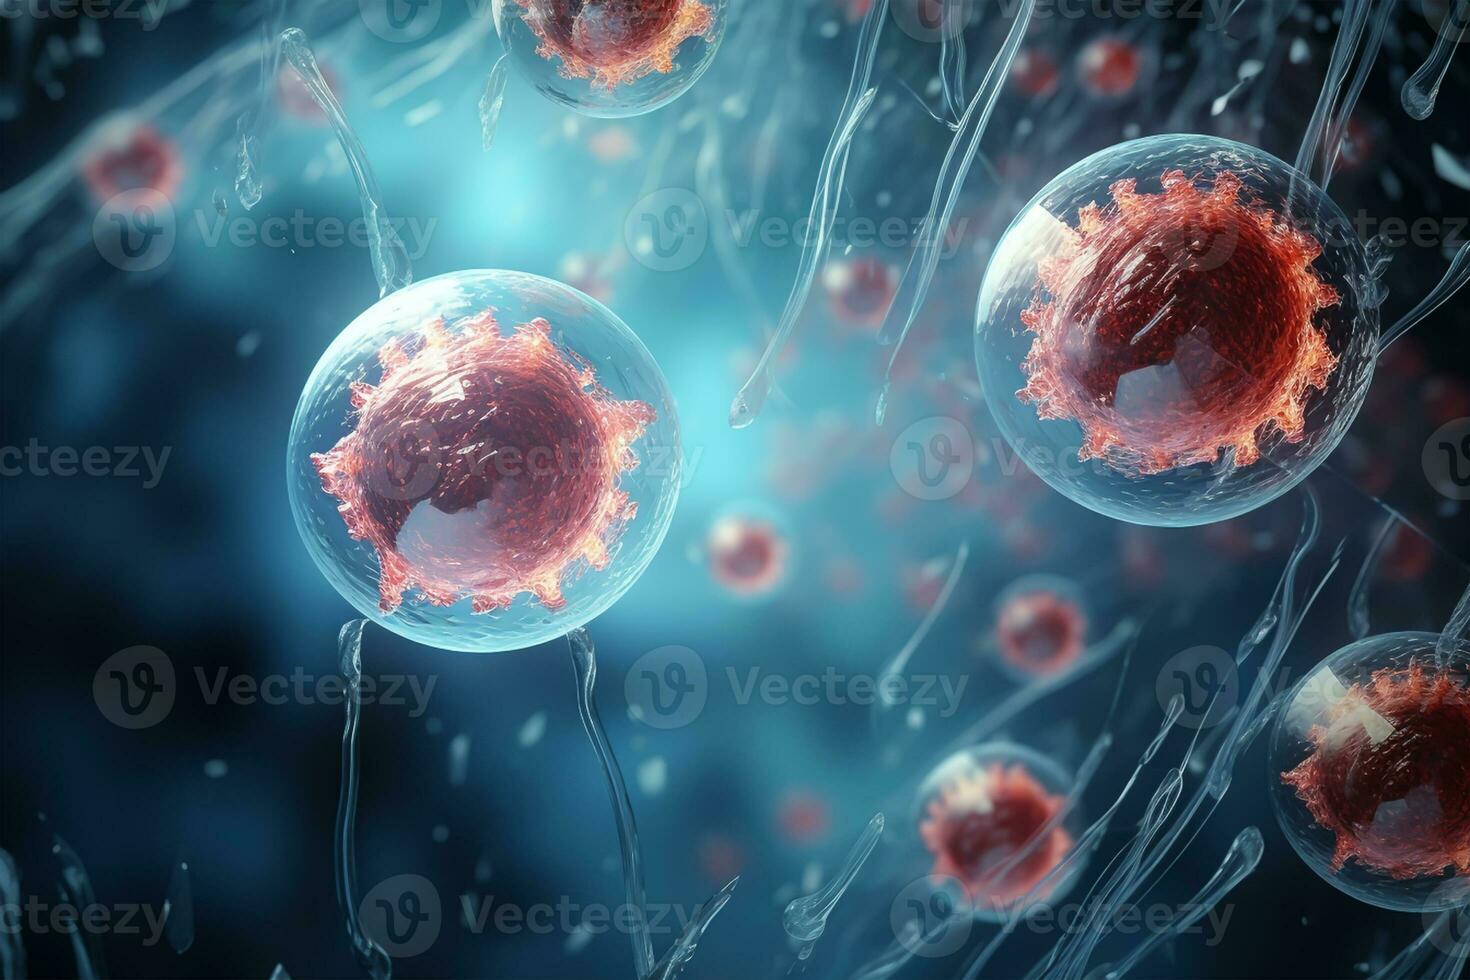 mänsklig cell eller embryonala stam cell mikroskop bakgrund, medicinsk vetenskap bakgrund foto